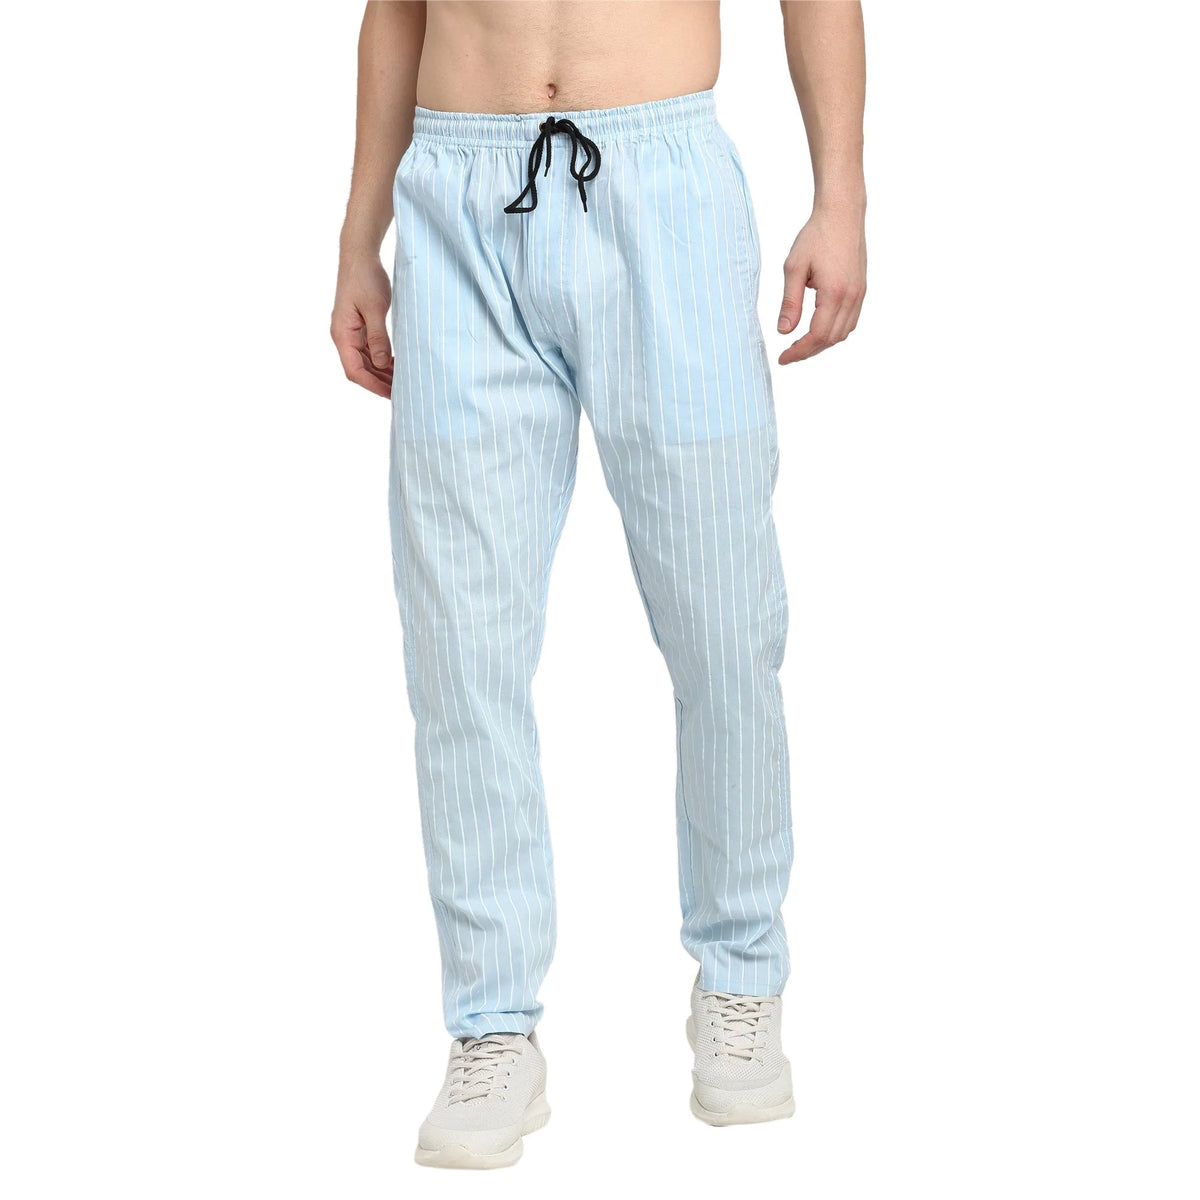 Jainish Men's Blue Cotton Striped Track Pants ( JOG 020Sky )